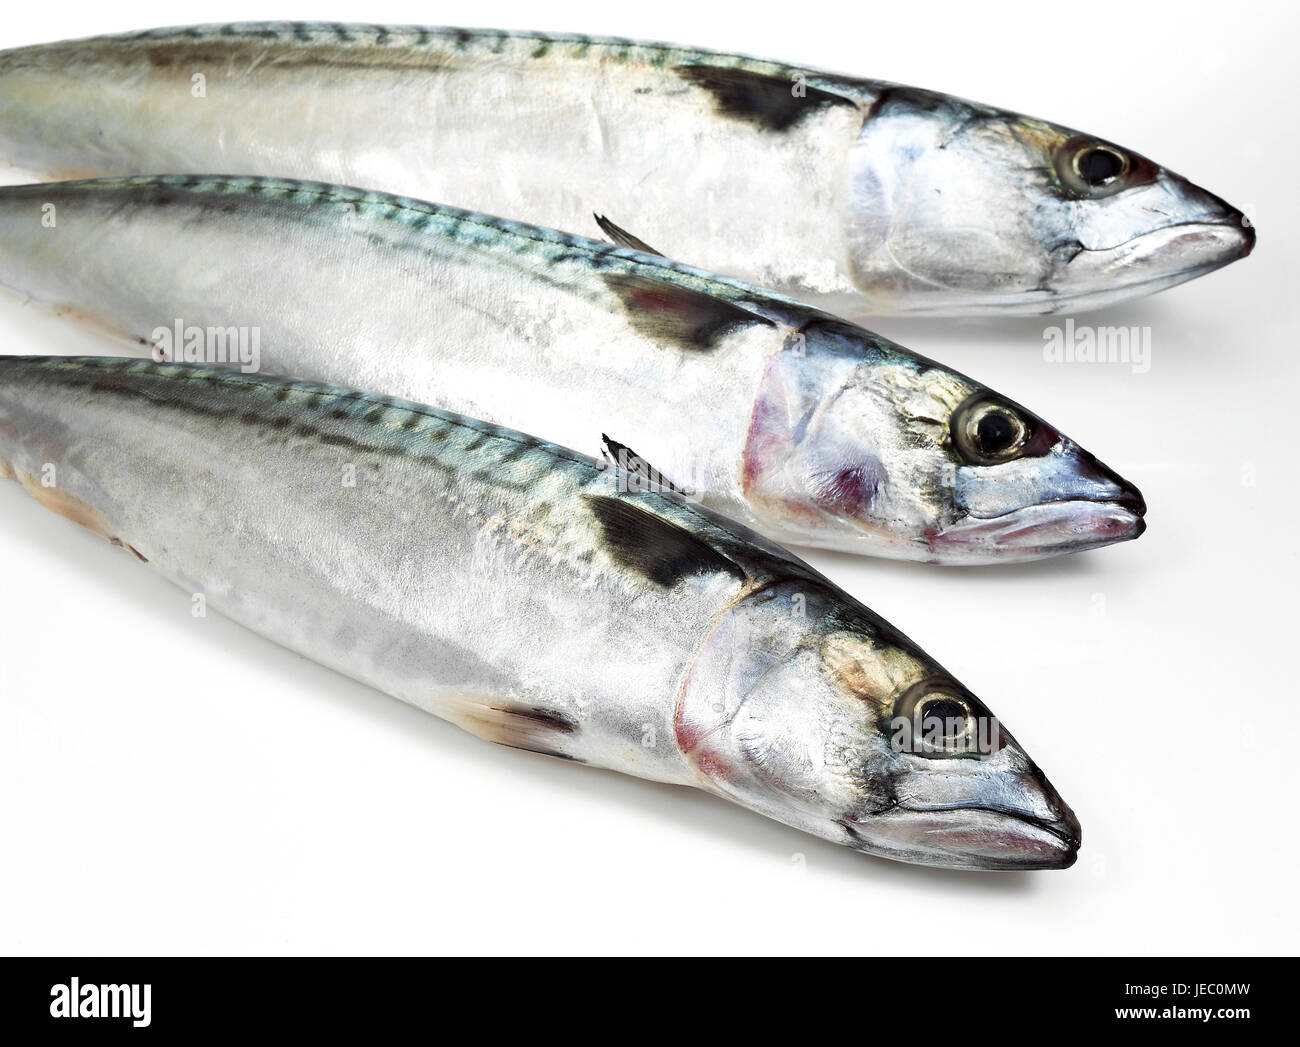 Mackerels, Scomber scombrus, fresh fish, white background, Stock Photo